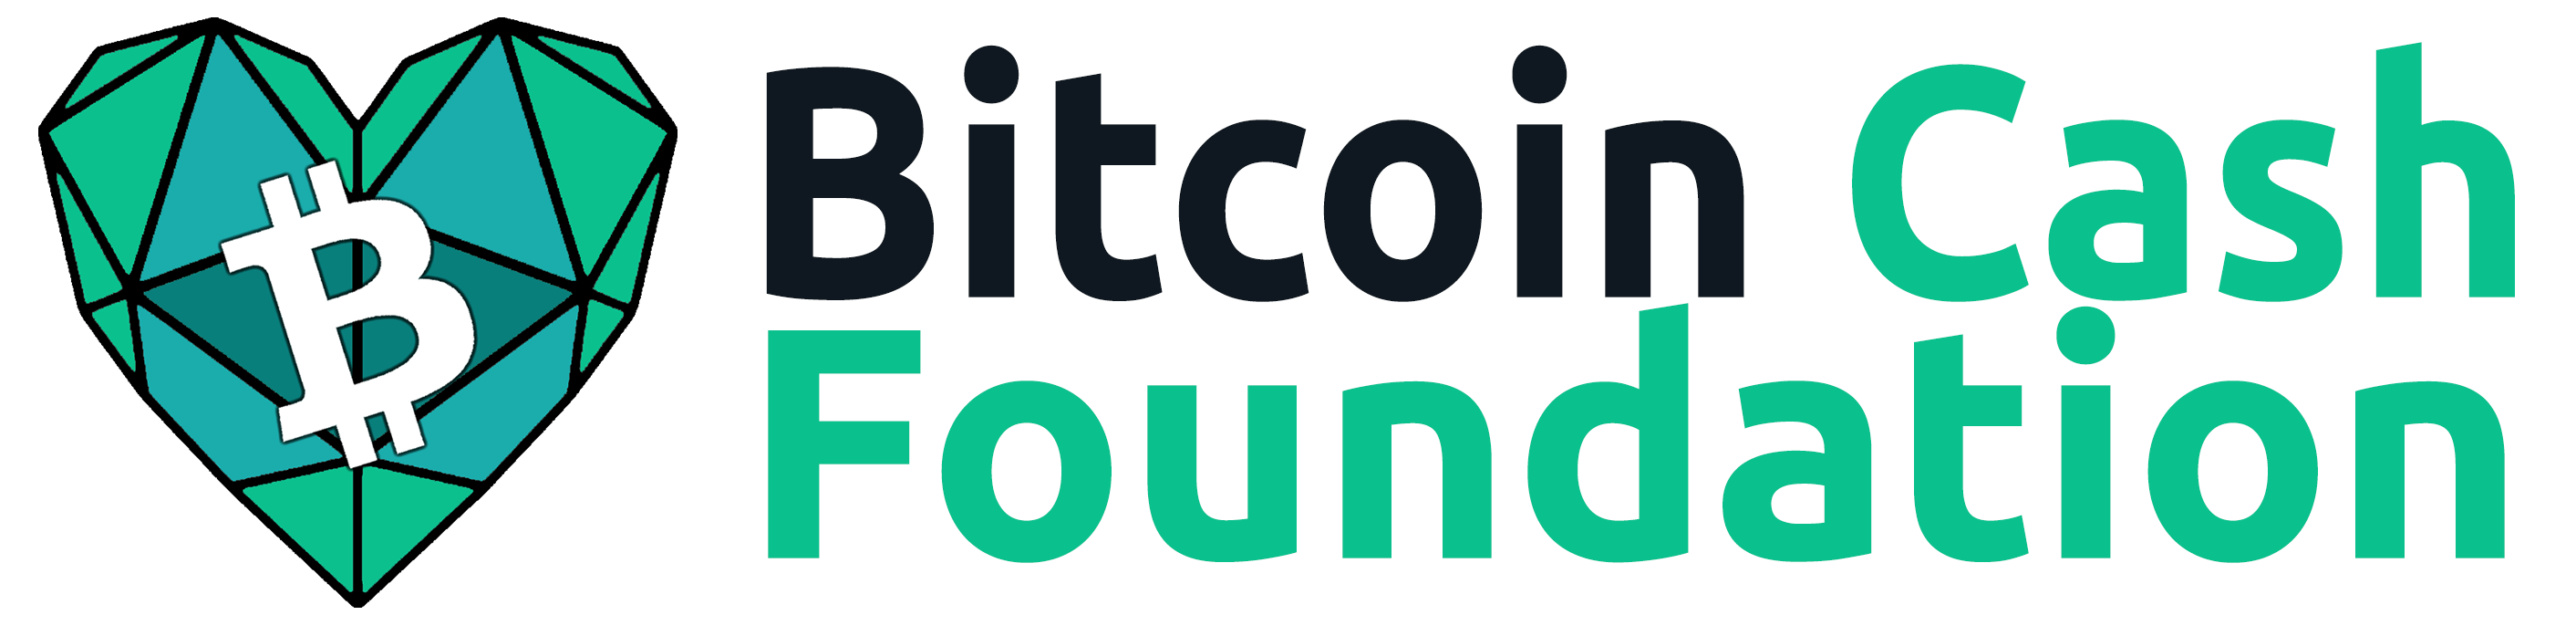 Bitcoin Cash Foundation